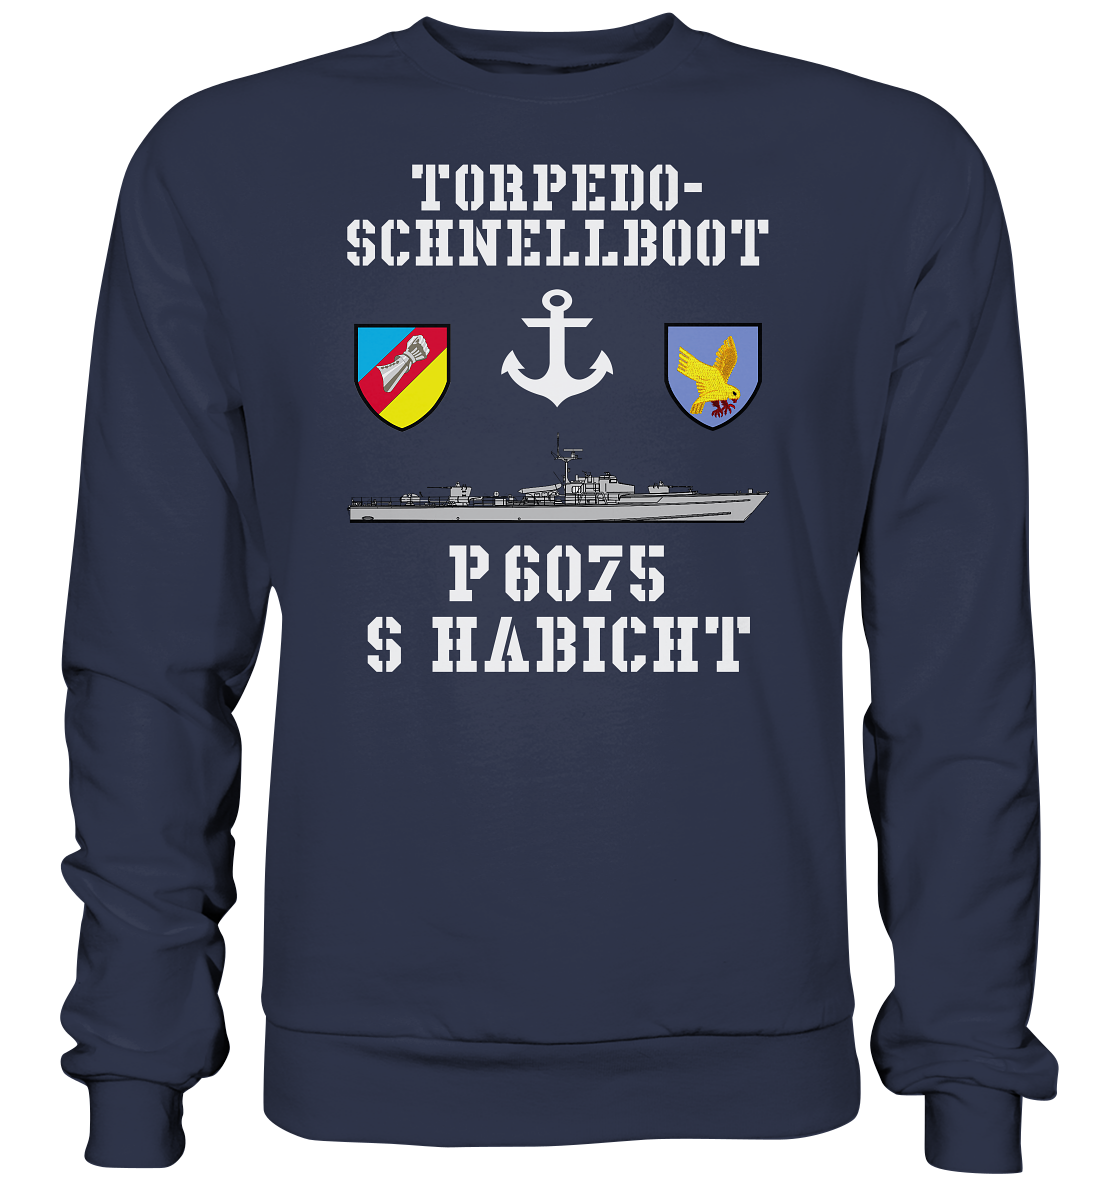 Torpedo-Schnellboot P6075 HABICHT Anker - Premium Sweatshirt